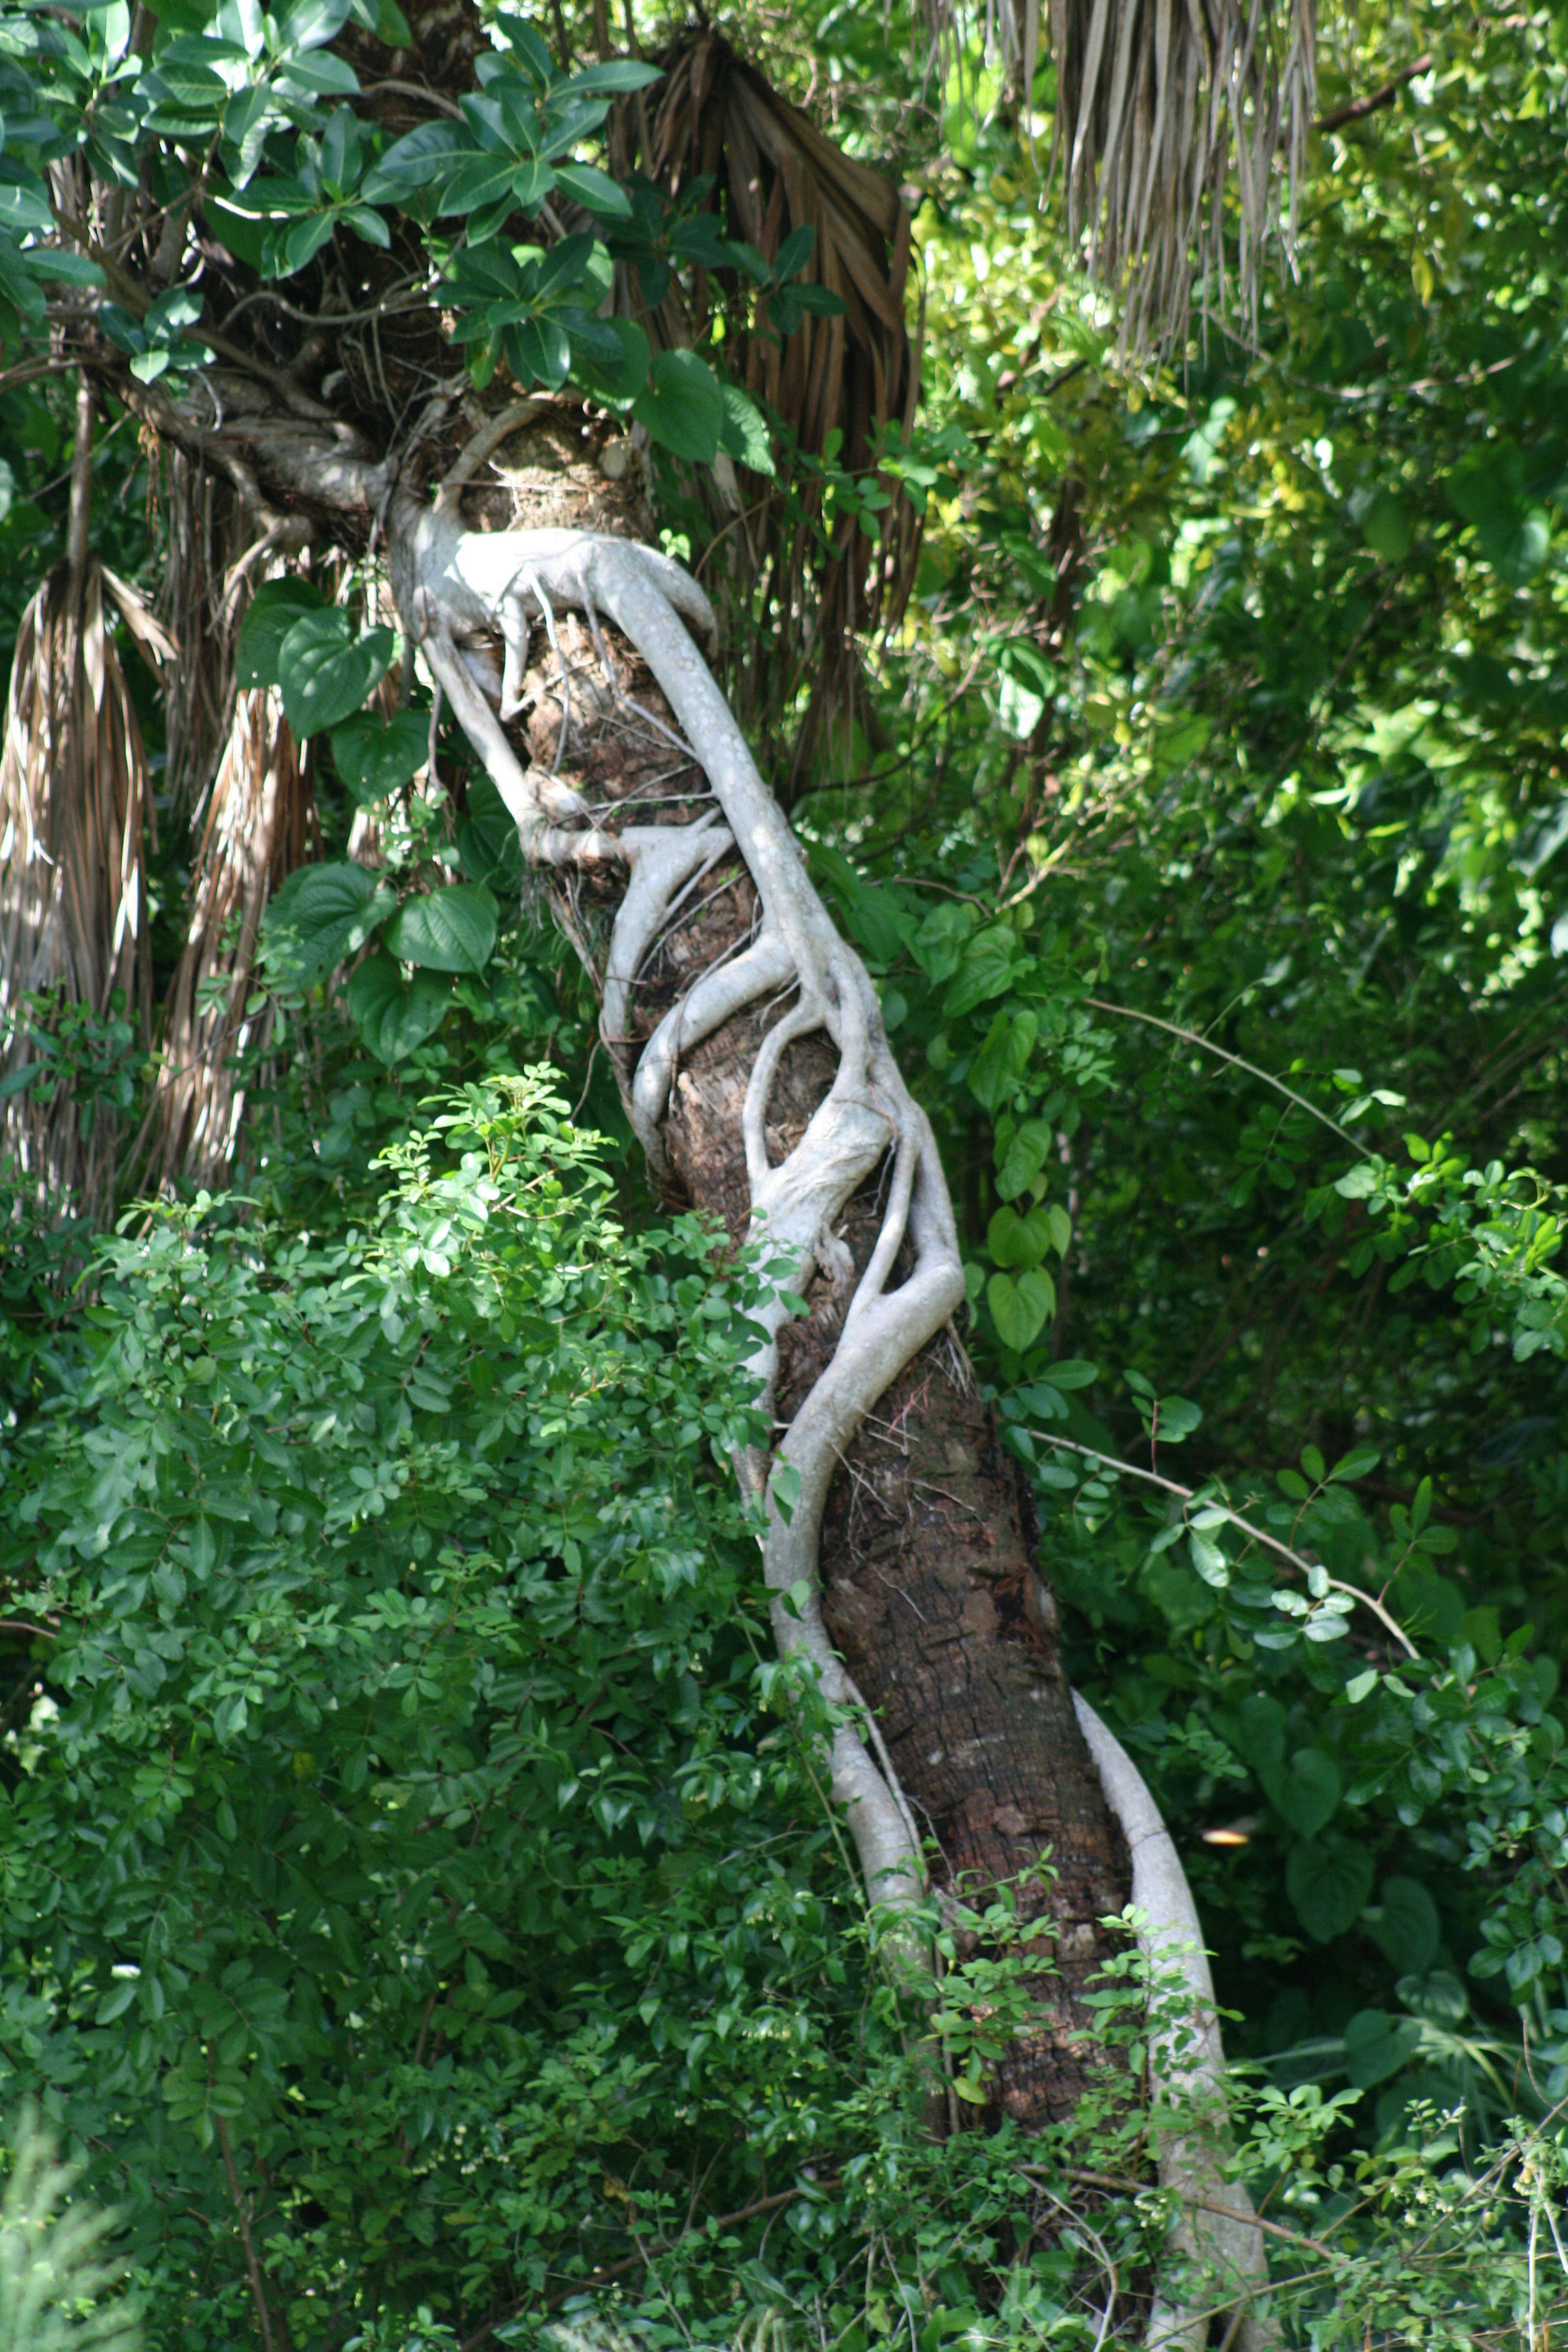 Image of Florida strangler fig